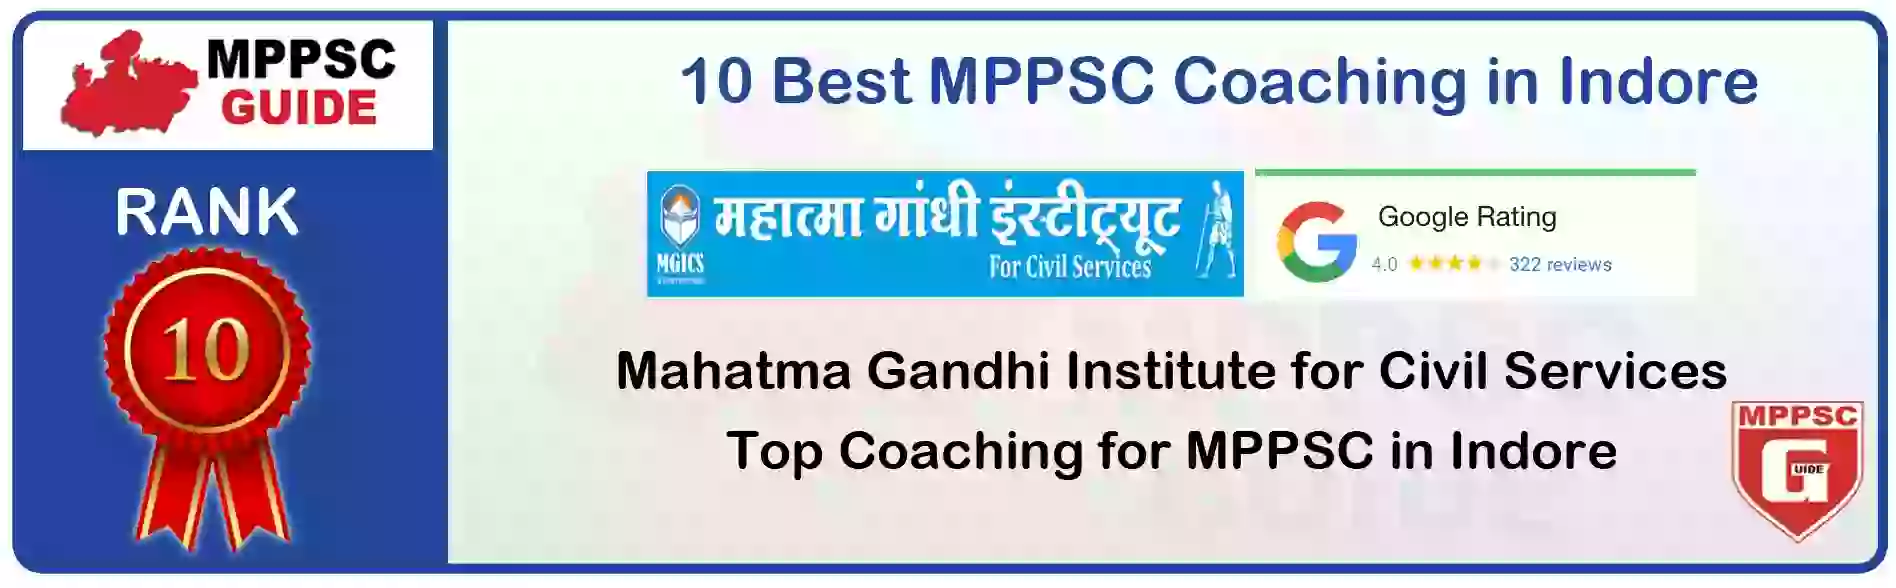 MPPSC Coaching in Shajapur, MPPSC Coaching Institute In Shajapur, Best MPPSC Coaching in Shajapur, Top 10 MPPSC Coaching In Shajapur, best mppsc coaching institute in shajapur, MPPSC Coaching Classes In Shajapur, MPPSC Online Coaching In Shajapur, mppsc coaching in Shajapur bhanwarkua